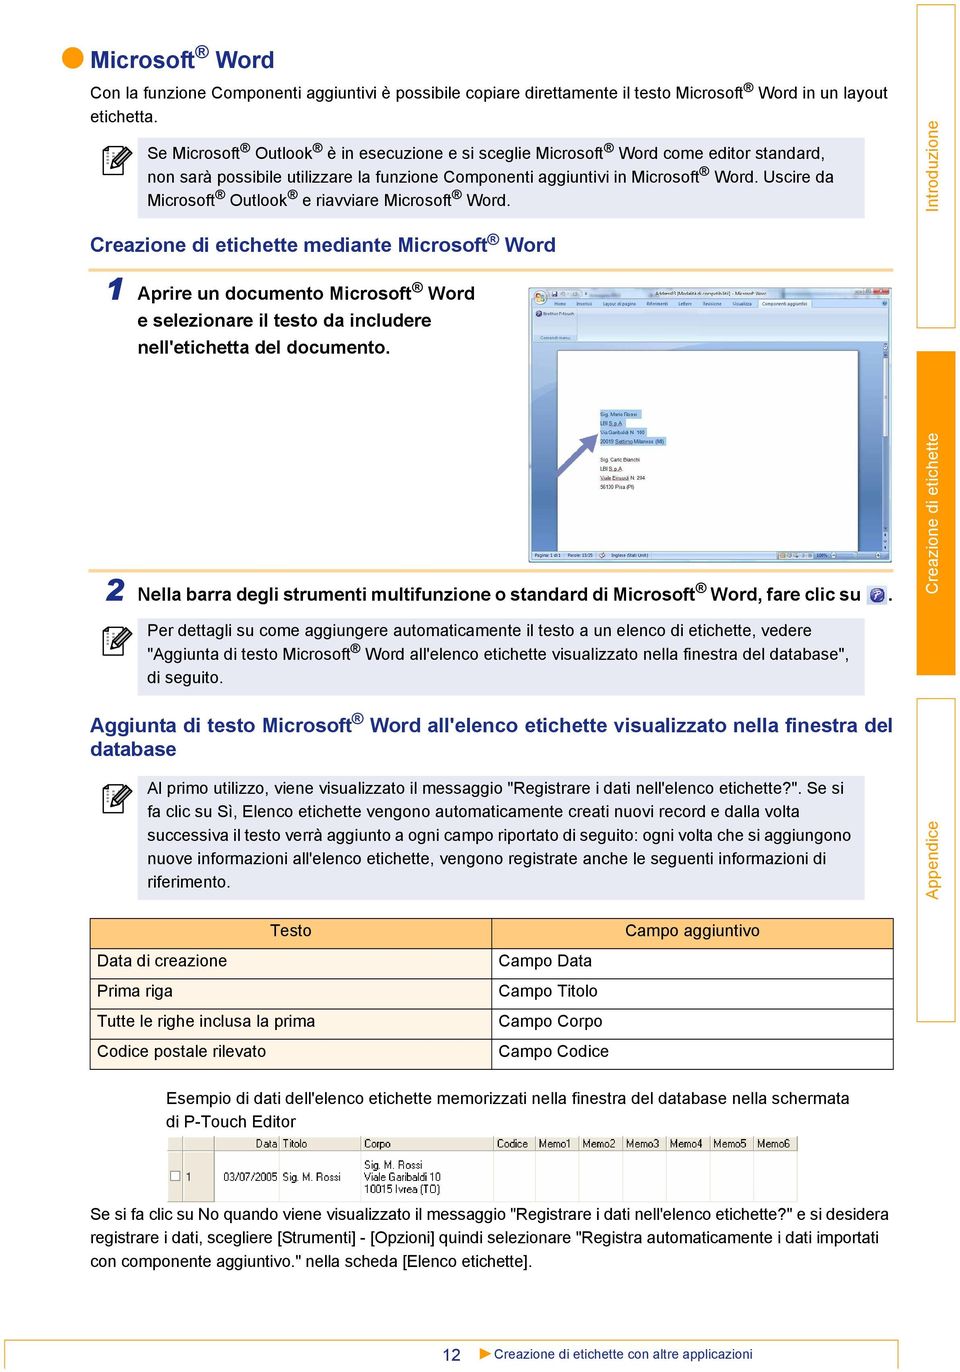 Uscire da Microsoft Outlook e riavviare Microsoft Word. mediante Microsoft Word 1 Aprire un documento Microsoft Word e selezionare il testo da includere nell'etichetta del documento.